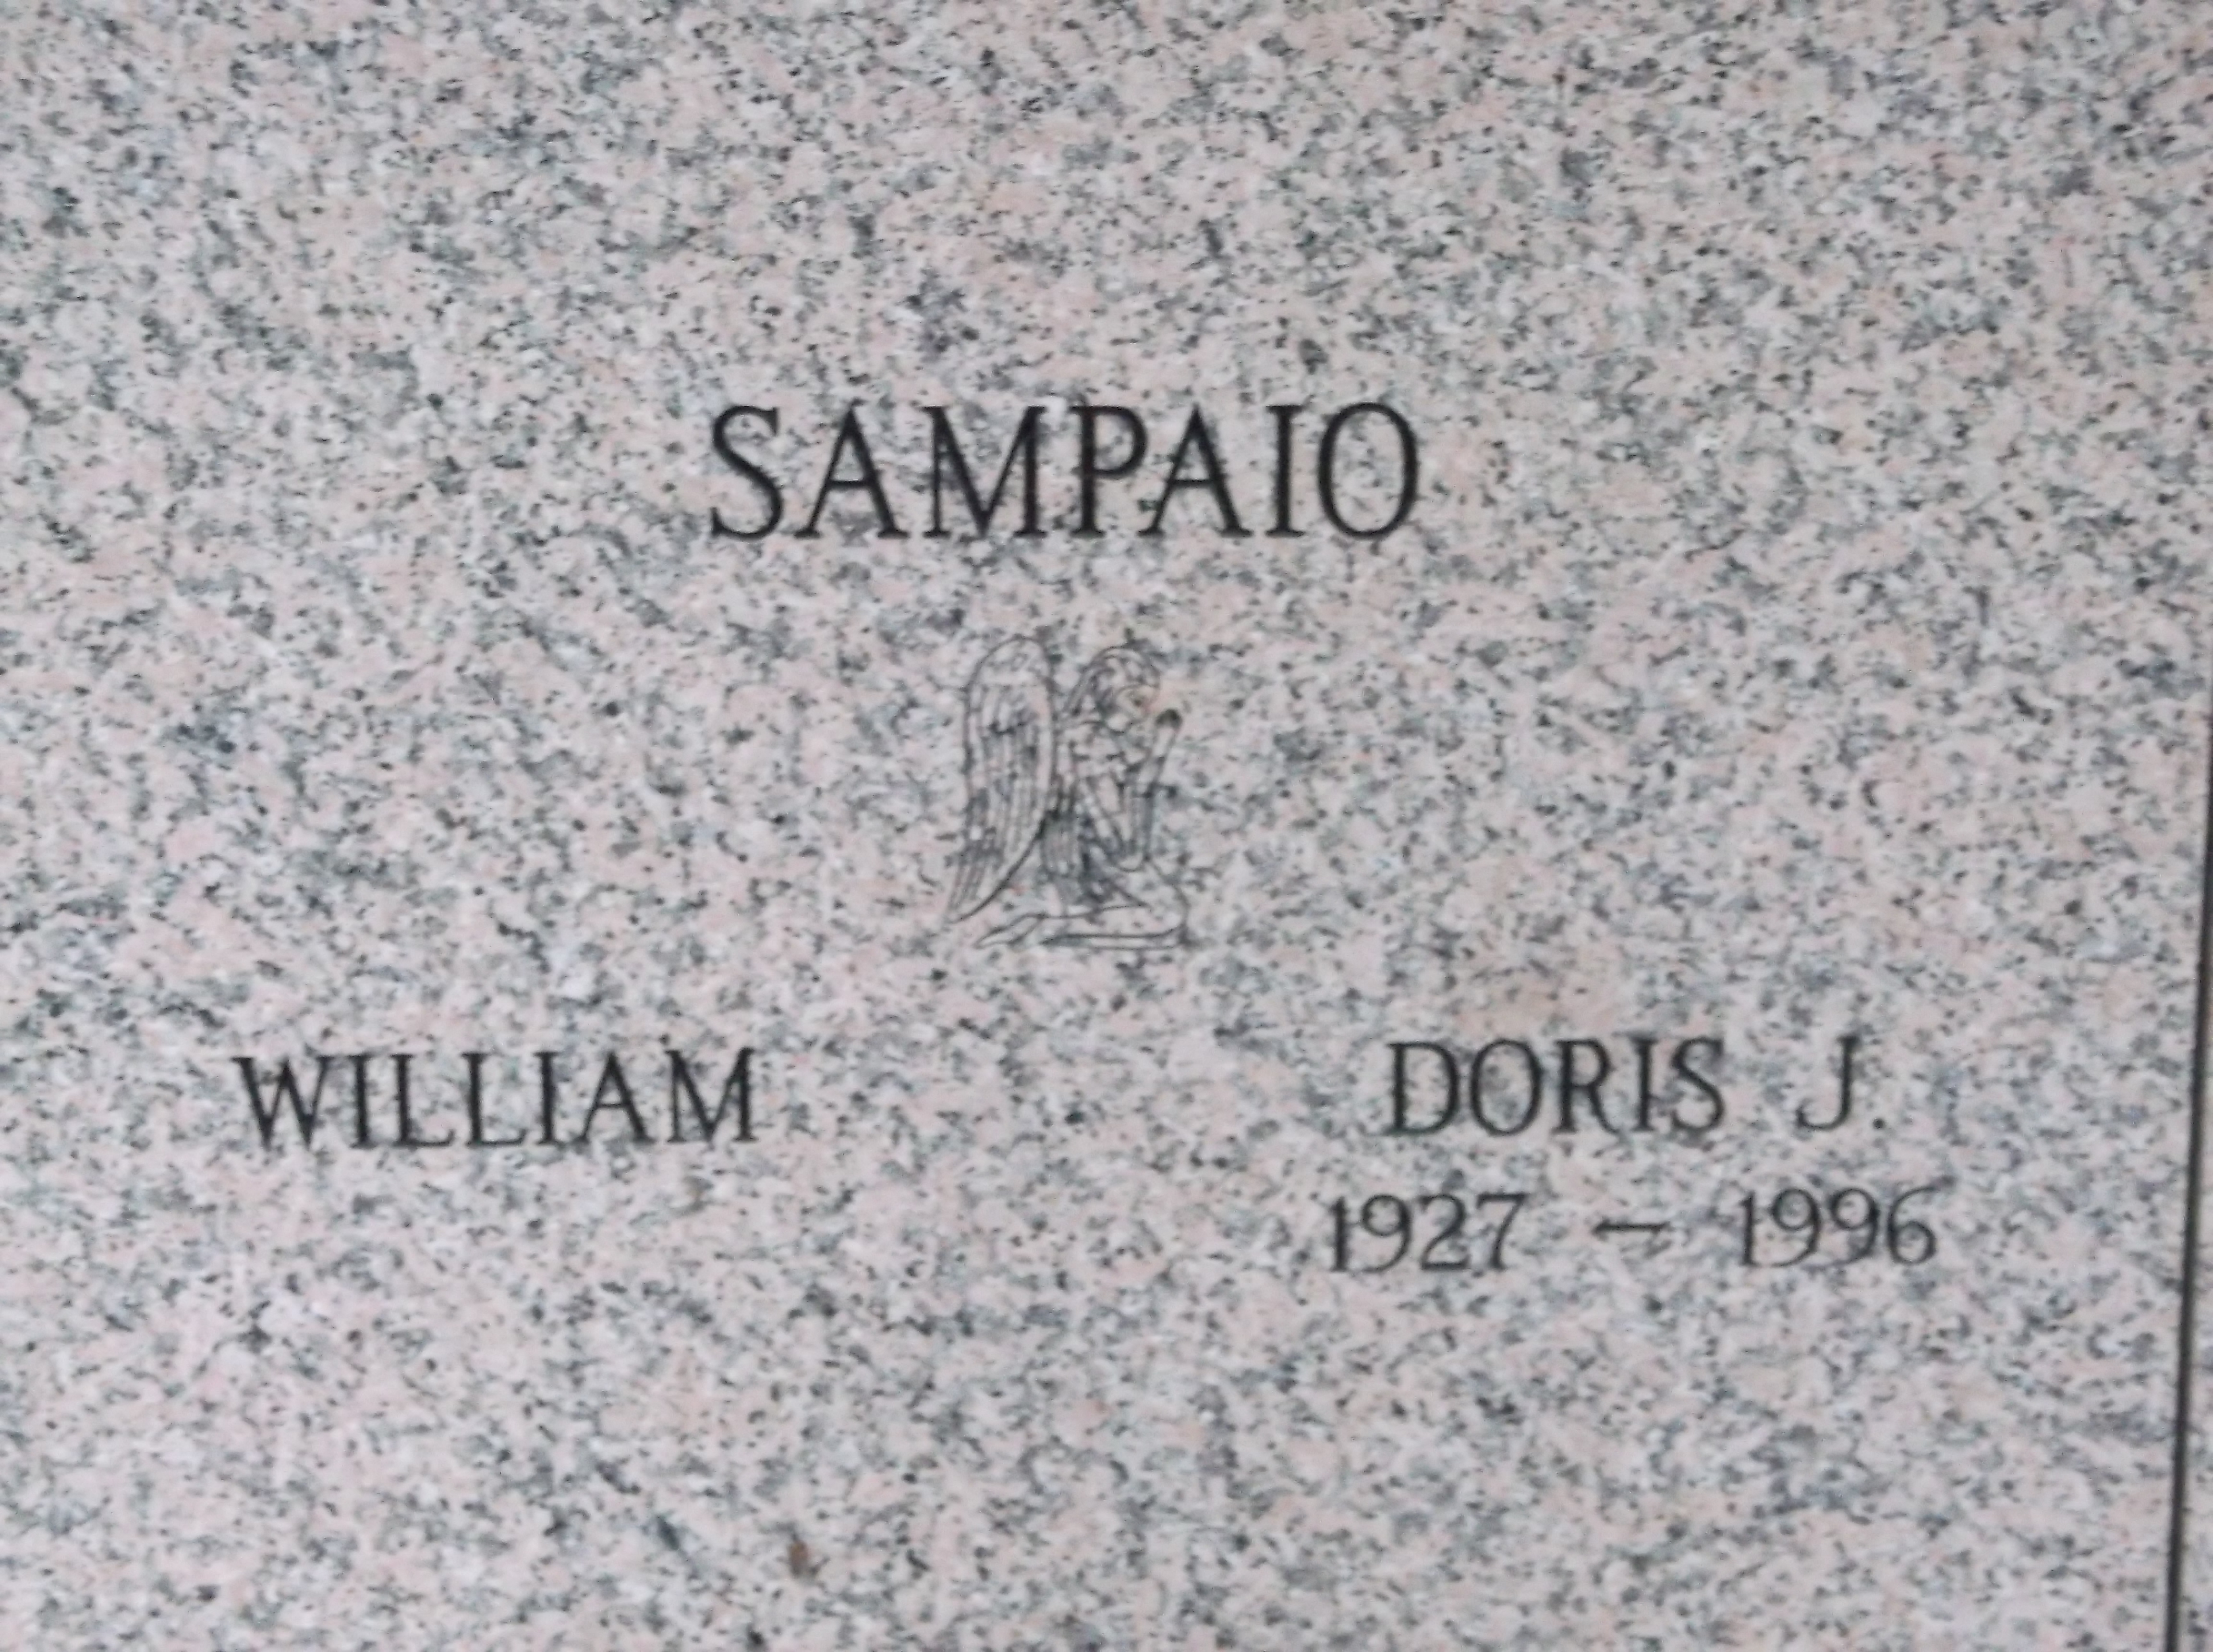 Doris J Sampaio